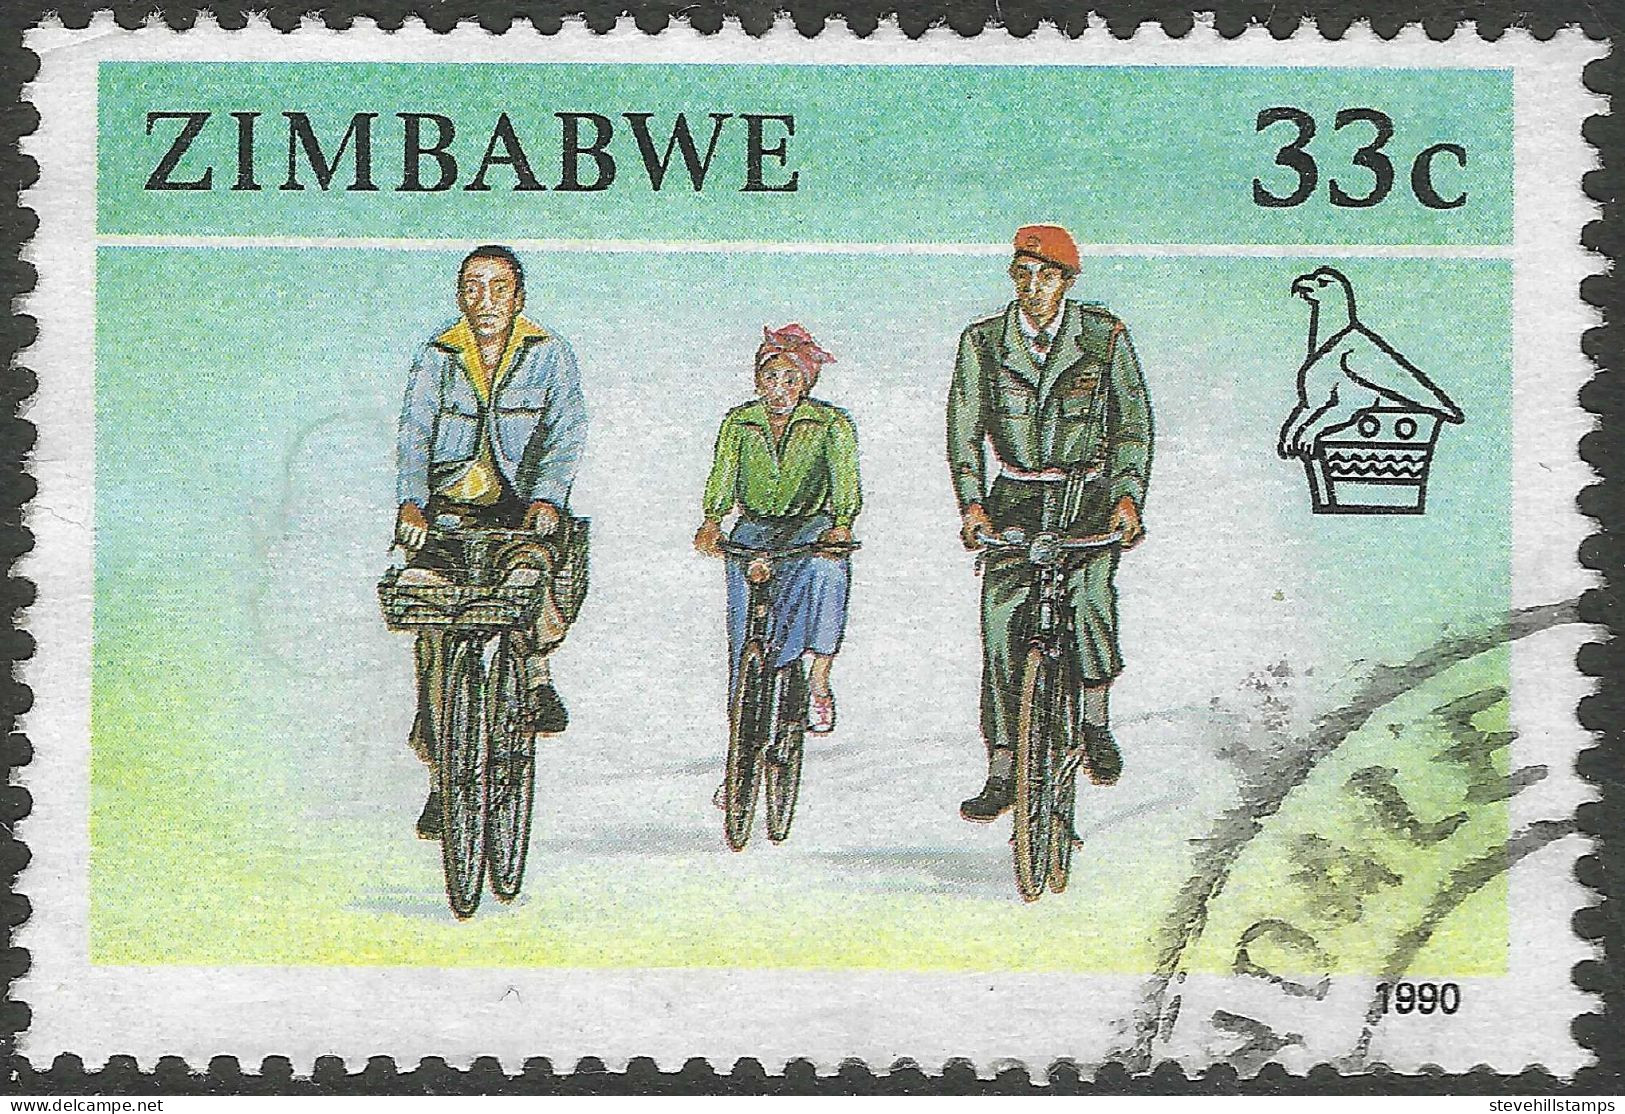 Zimbabwe. 1990 Definitives. 33c Used. SG 780 - Zimbabwe (1980-...)